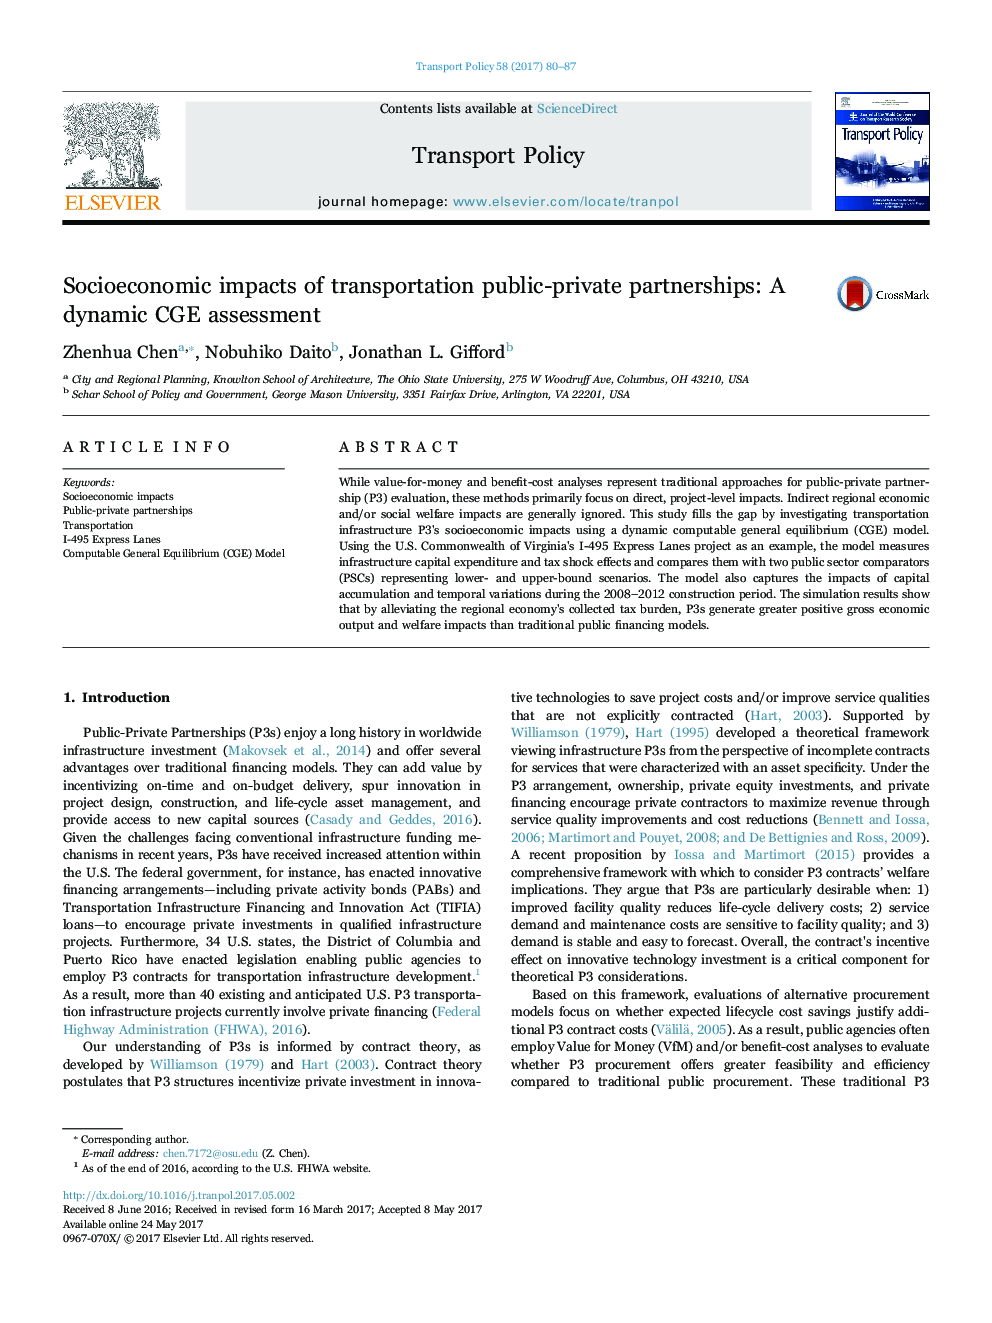 تأثیرات اجتماعی و اقتصادی حمل ونقل عمومی و خصوصی: ارزیابی PGE پویا